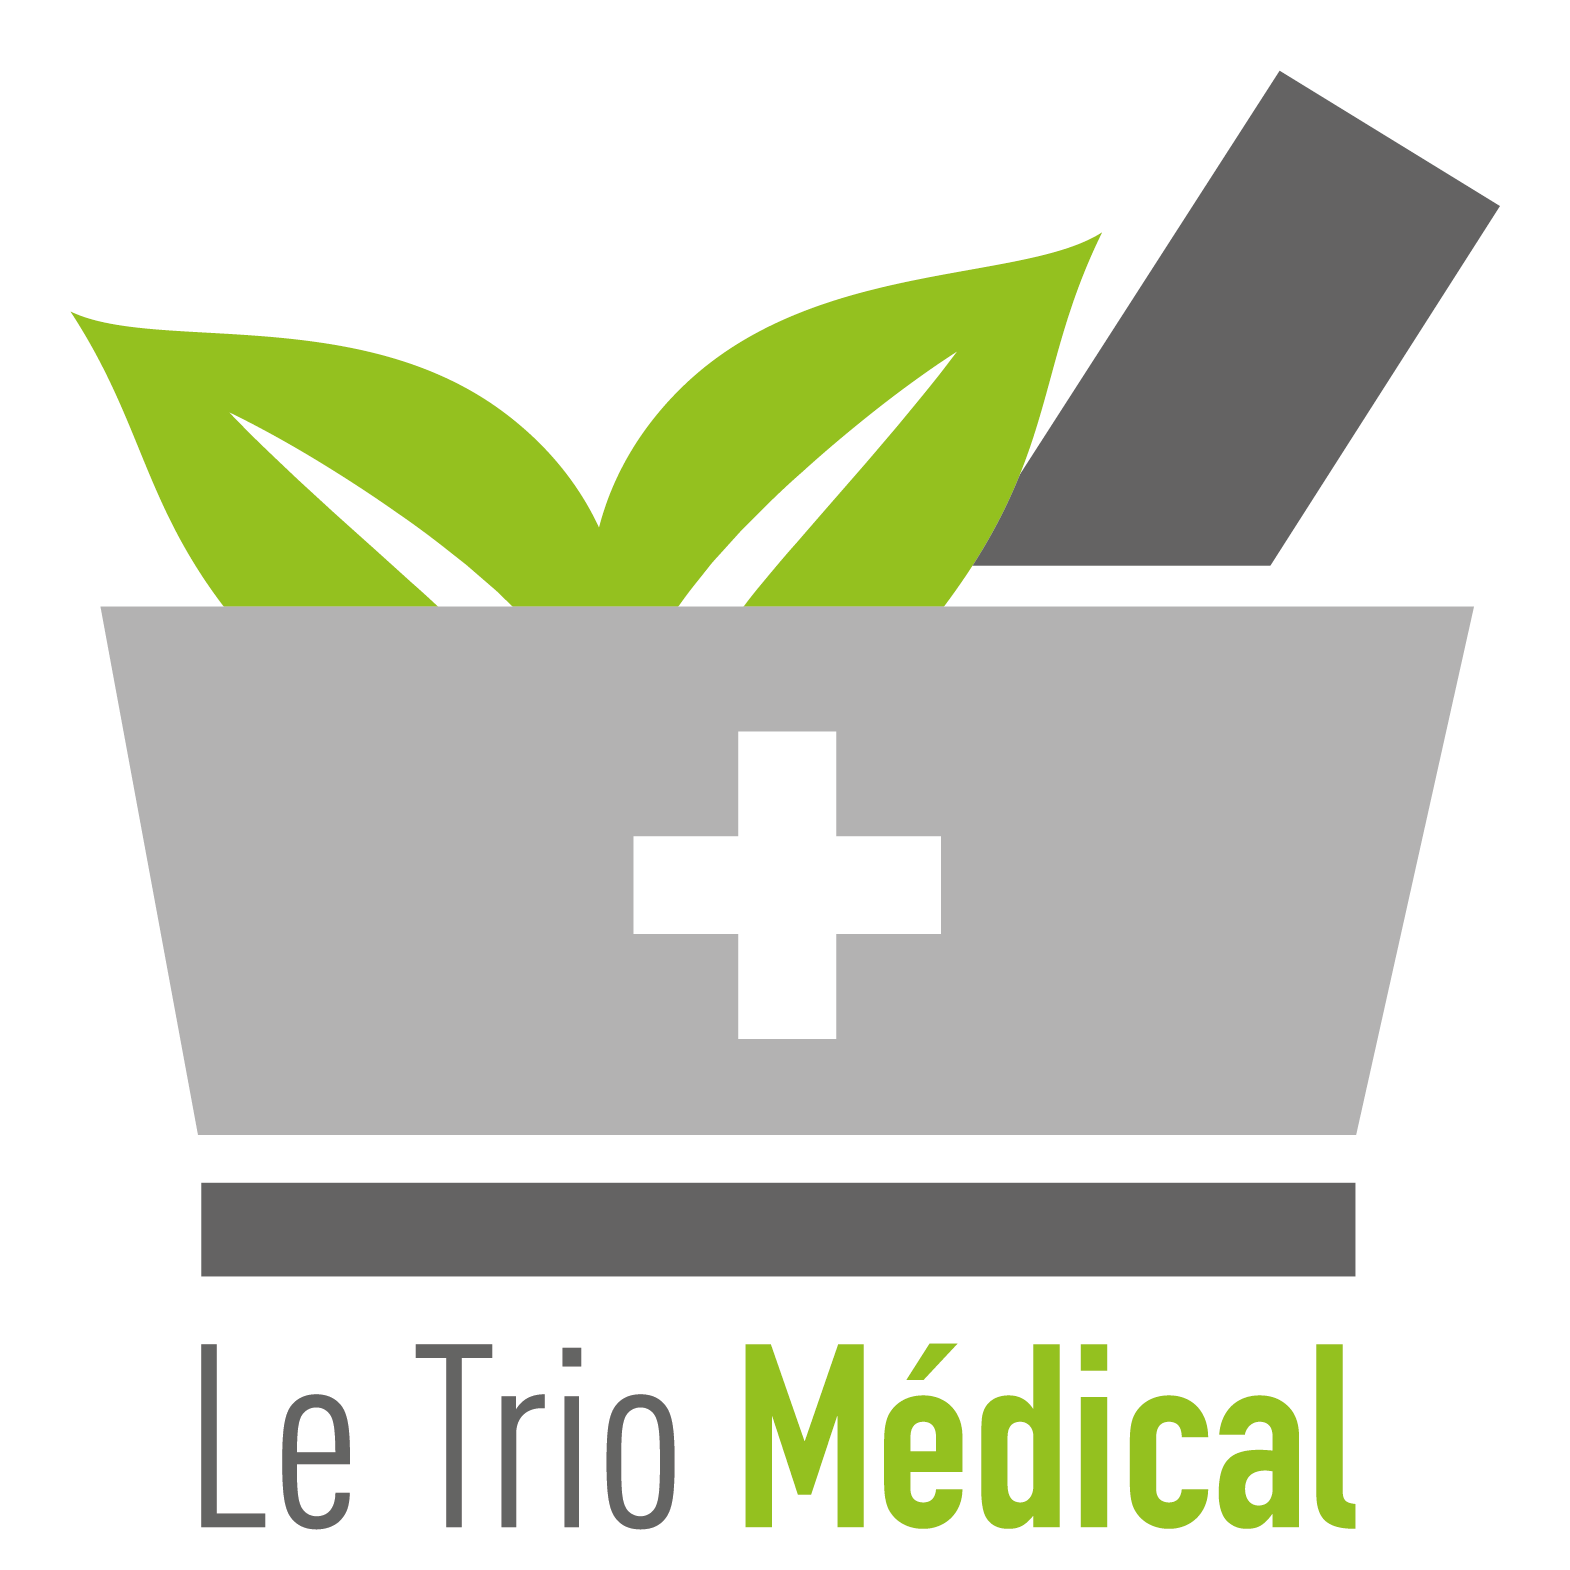 Le trio medical